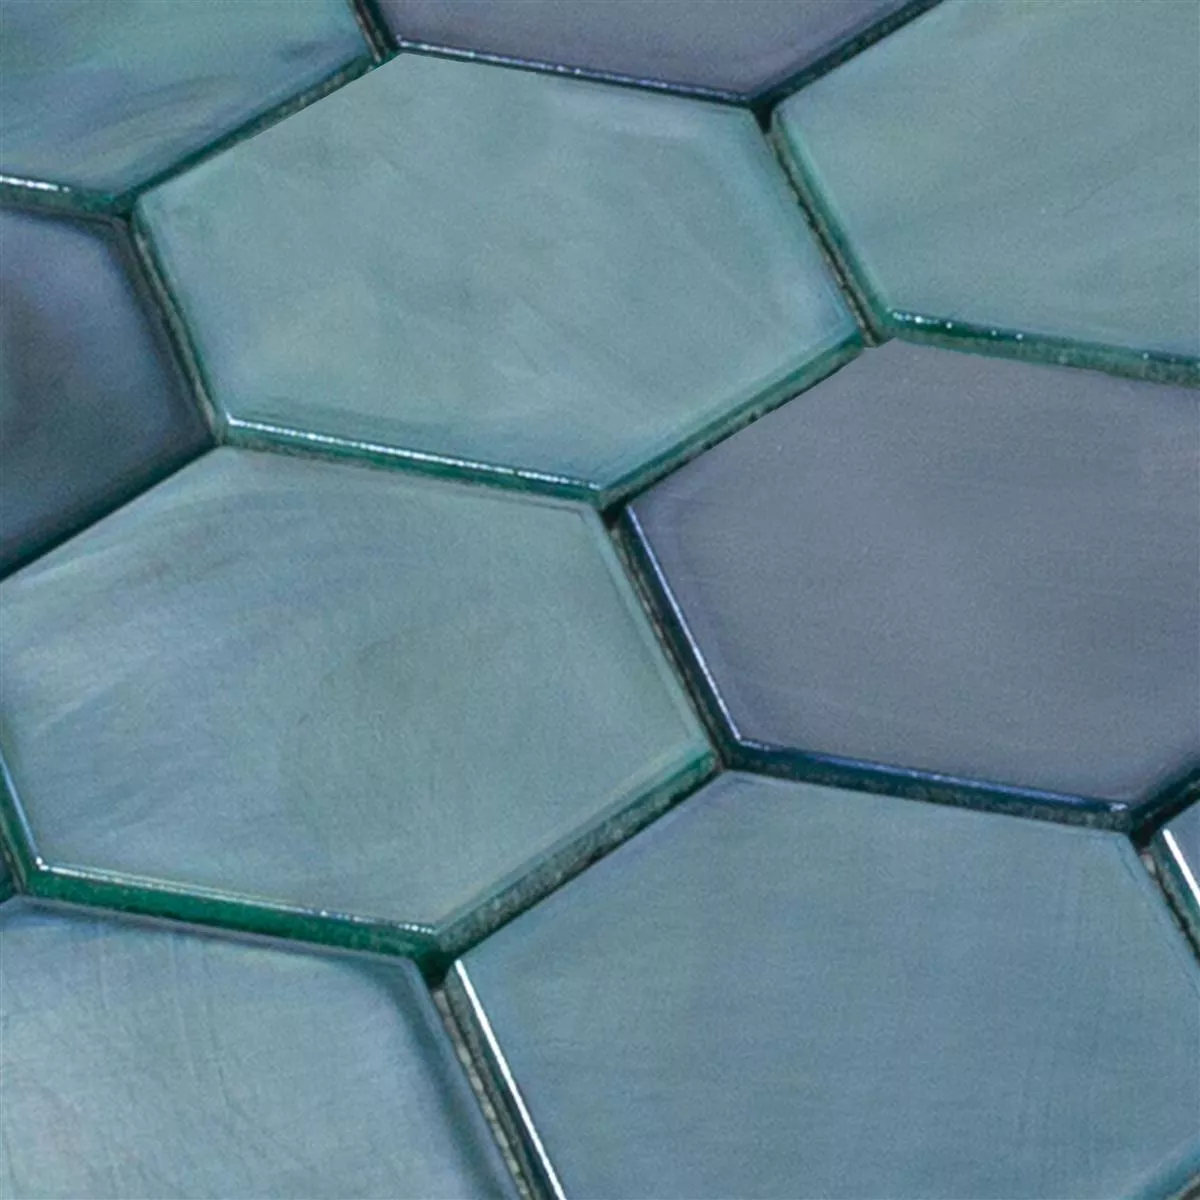 Sample Glass Mosaic Tiles Andalucia Hexagon Sea Green